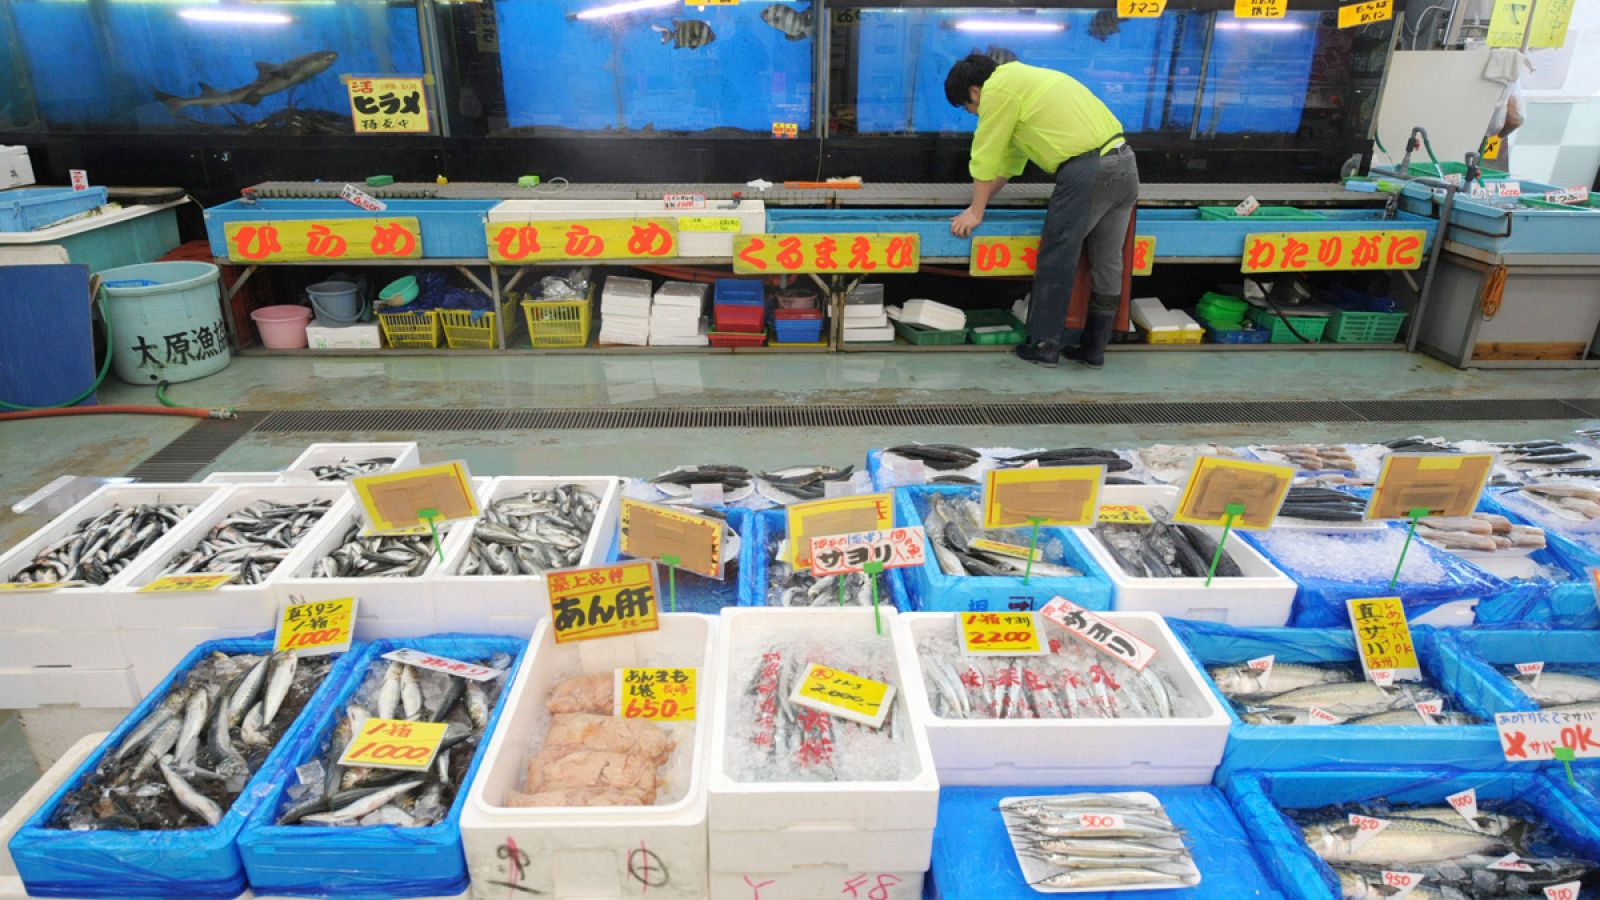 Un vendedor espera la llegada de clientes en una pescadería de la ciudad de Ichinomiya, al sur de Fukushima.